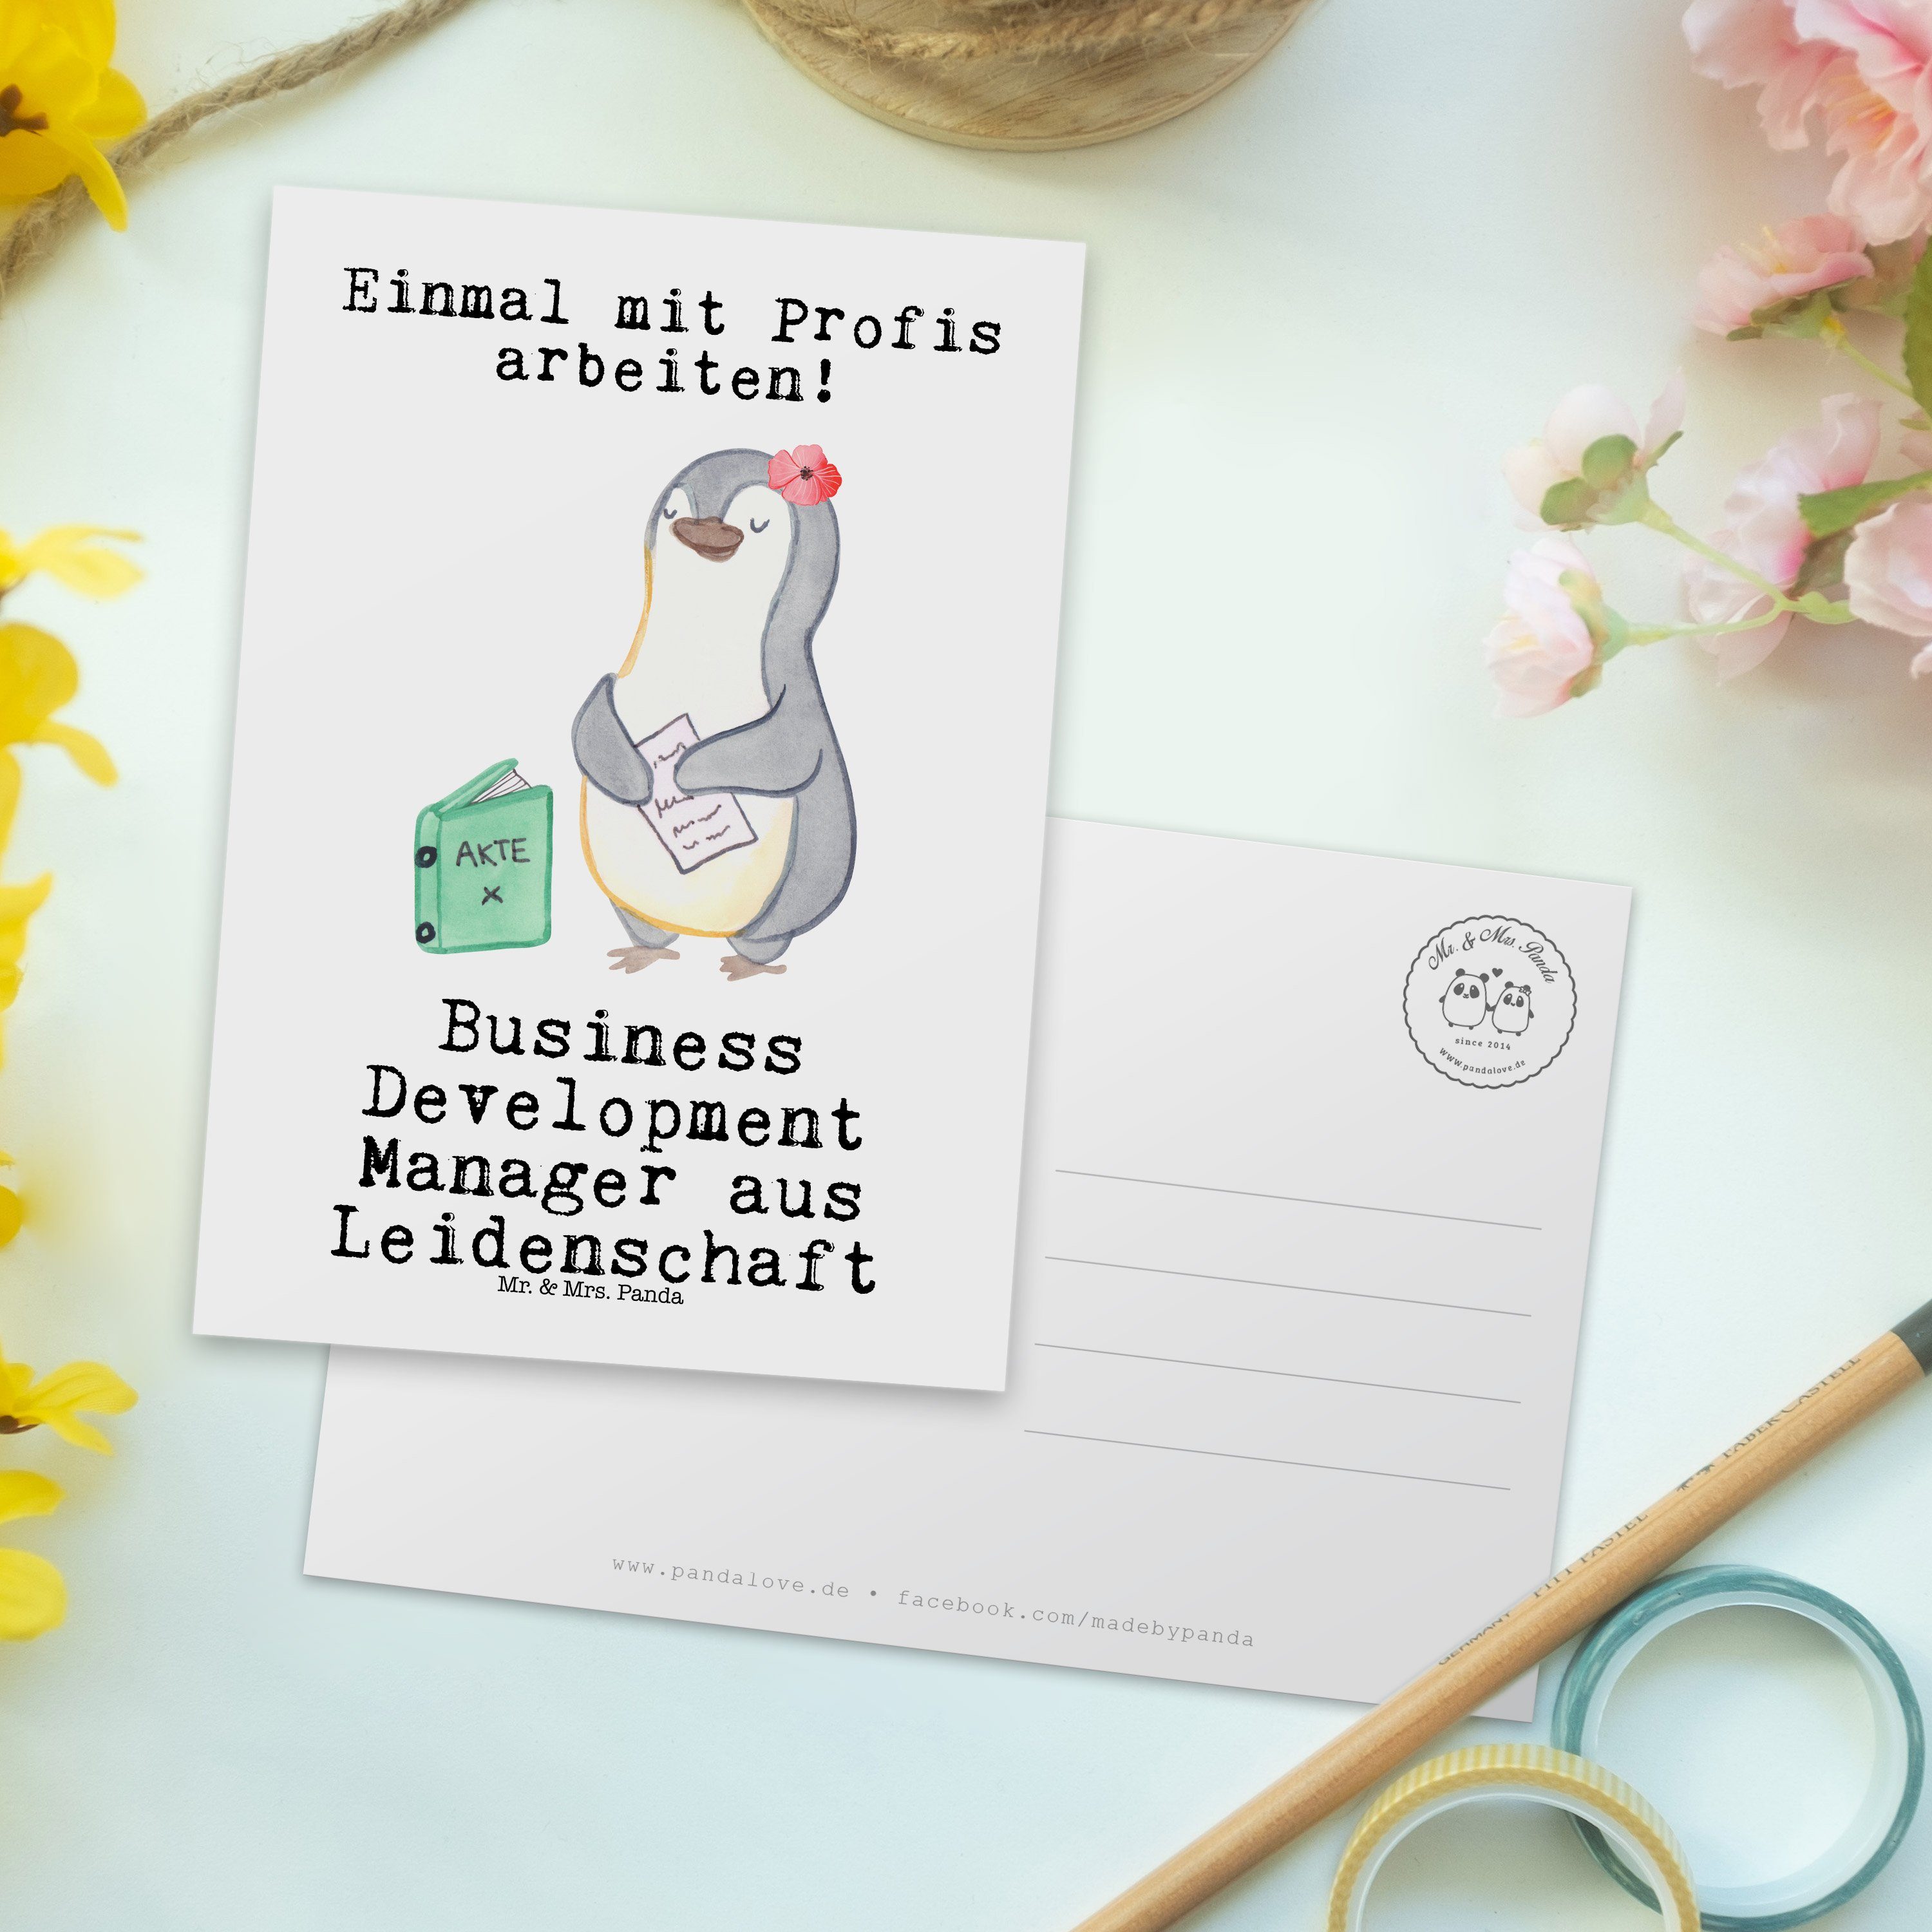 Mr. Postkarte Weiß Manager aus Business - Development - Koll Mrs. Leidenschaft Panda & Geschenk,